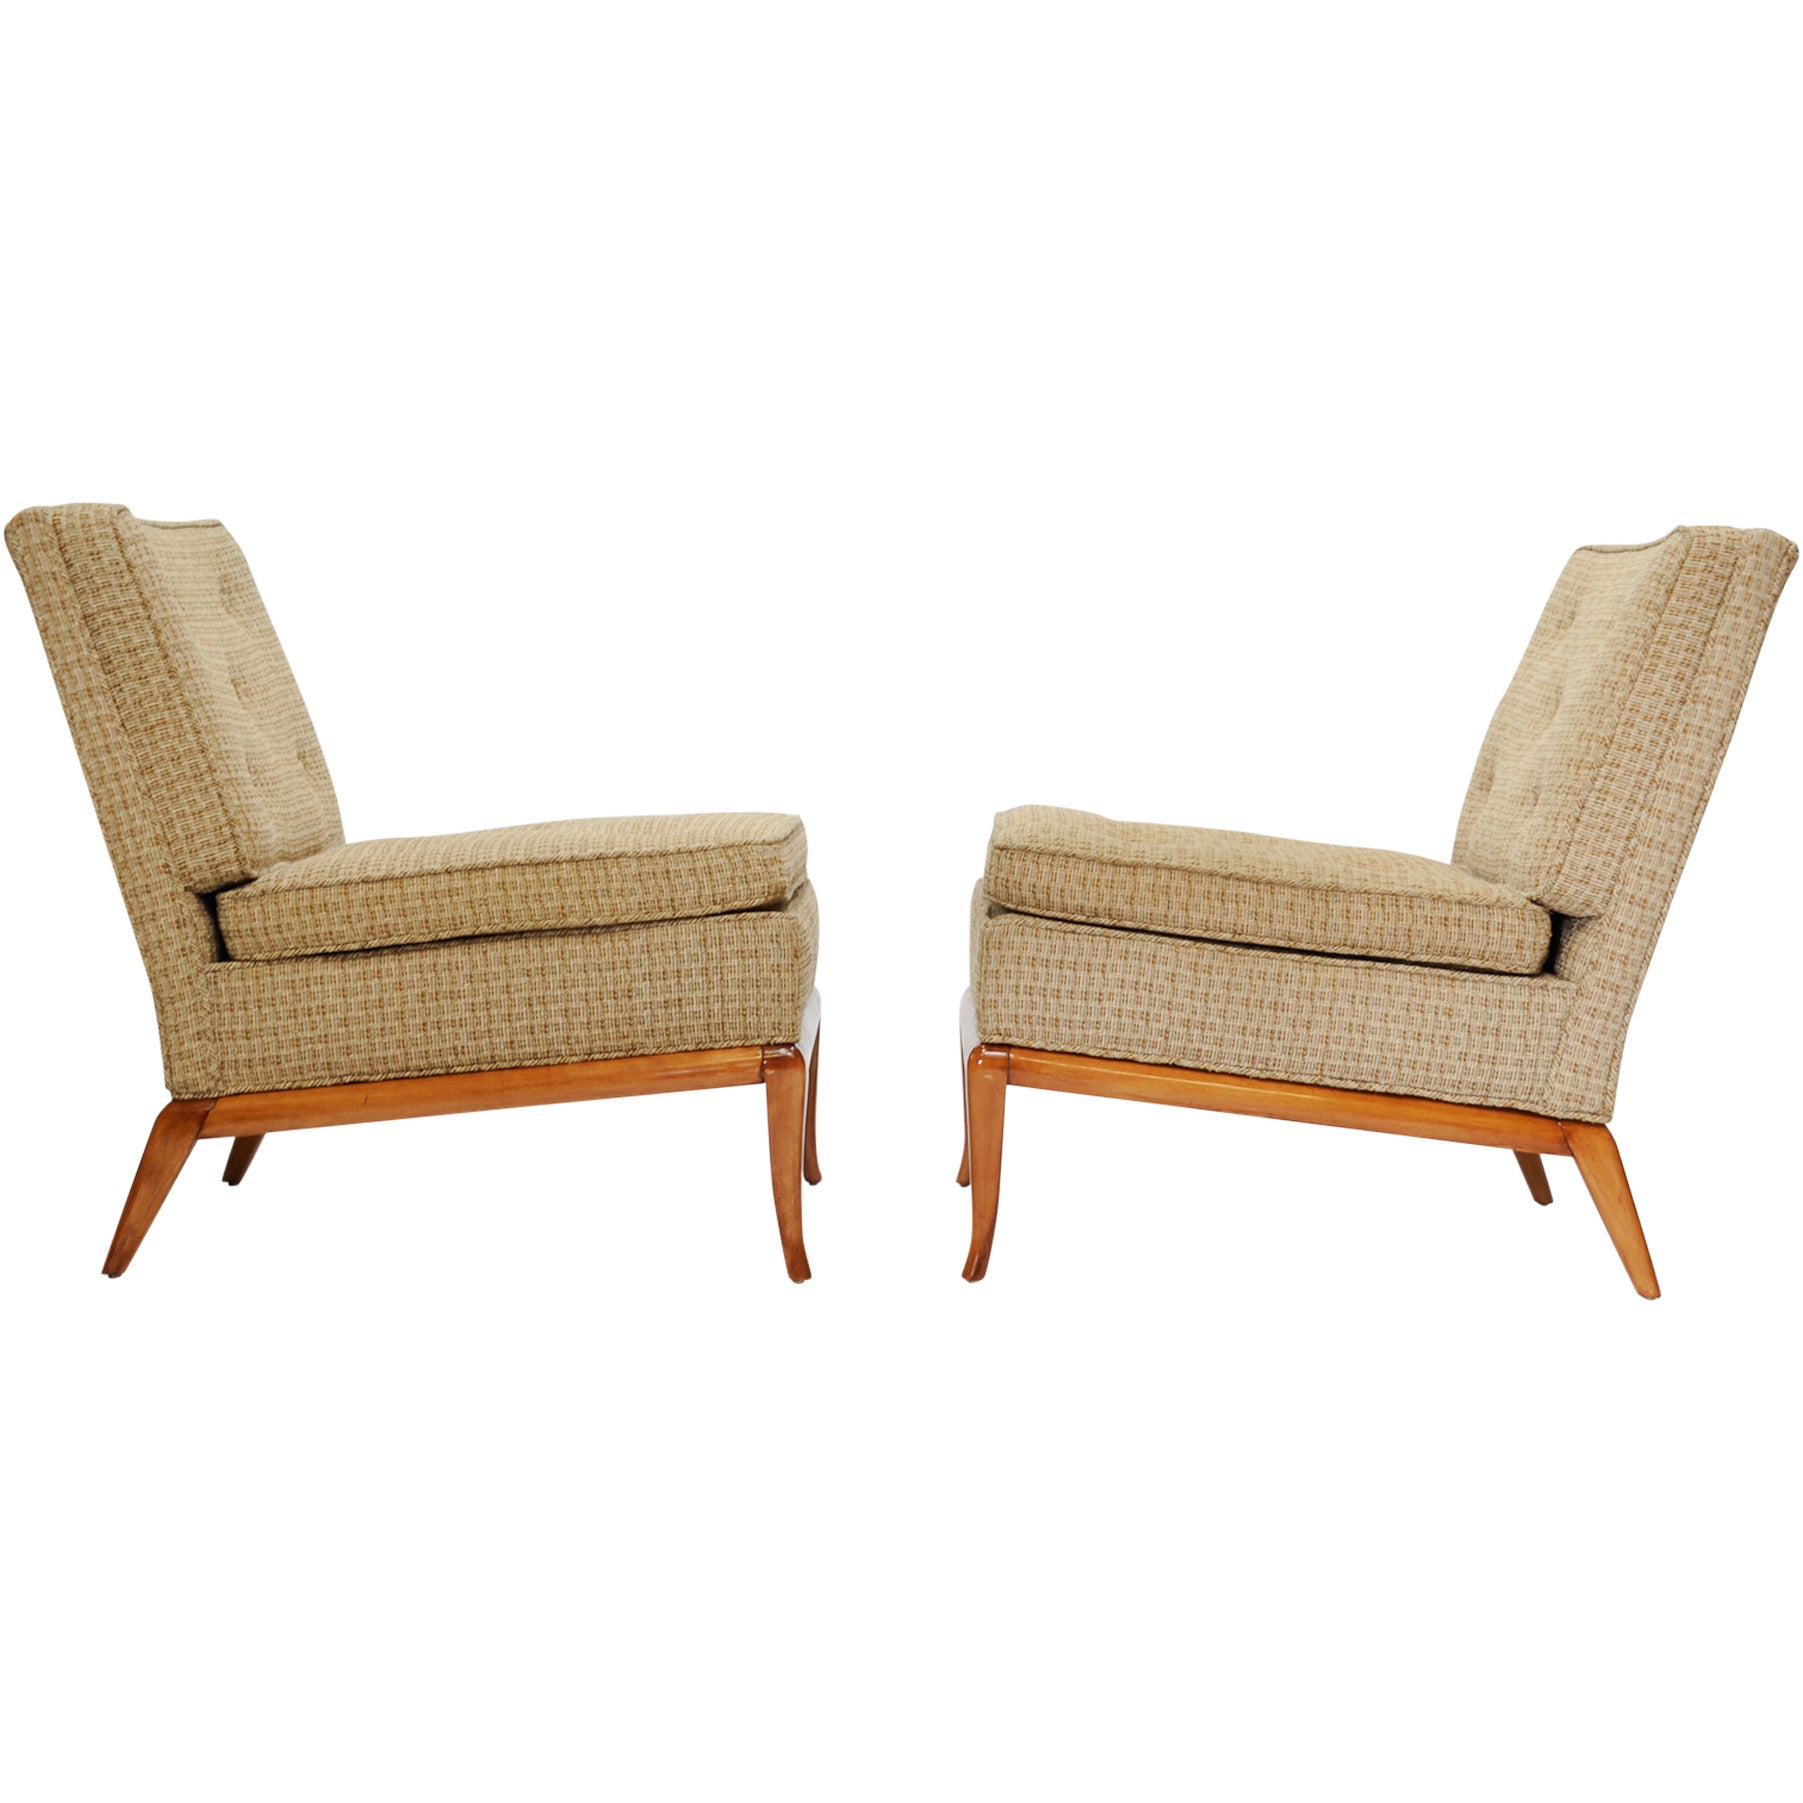 A Pair of T.H. Robsjohn-Gibbings Slipper Chairs for Widdicomb